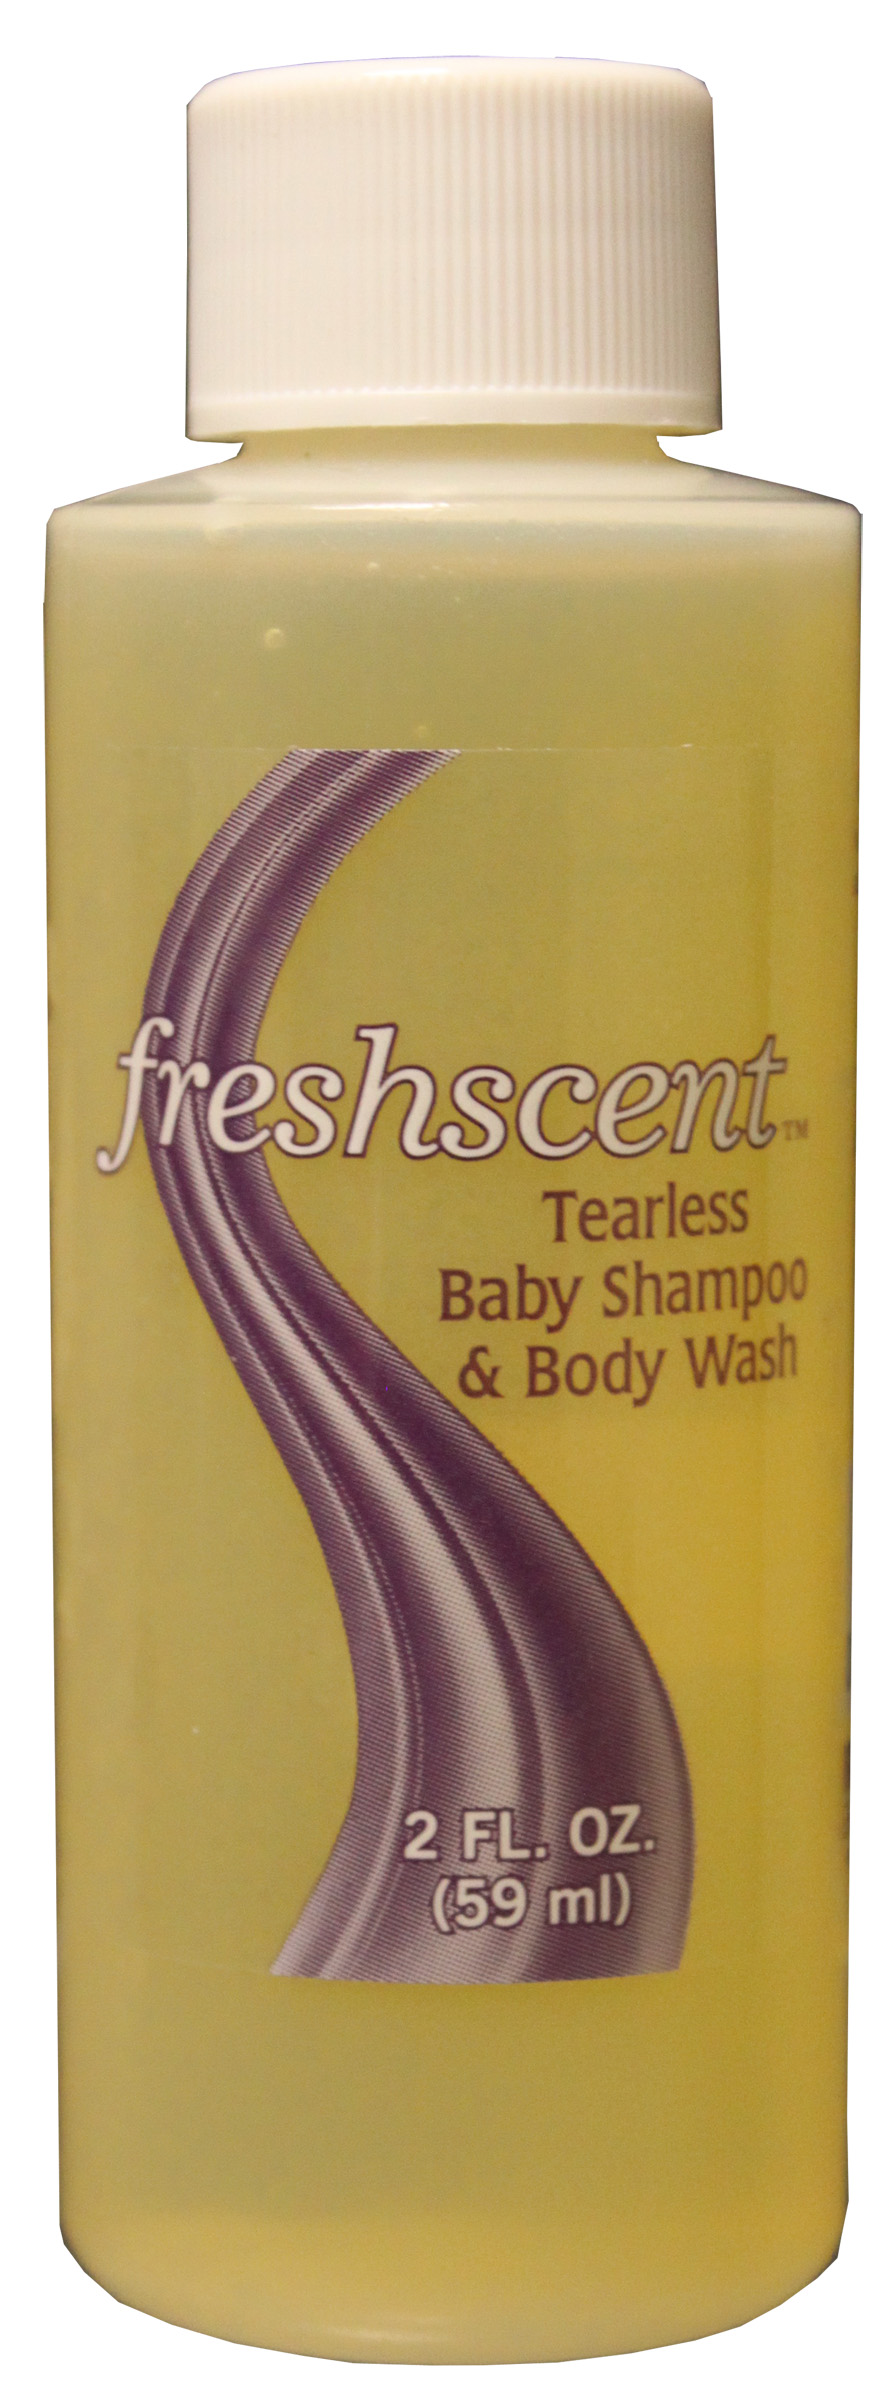 Freshscent 2 oz. Tearless Baby SHAMPOO & Body Wash